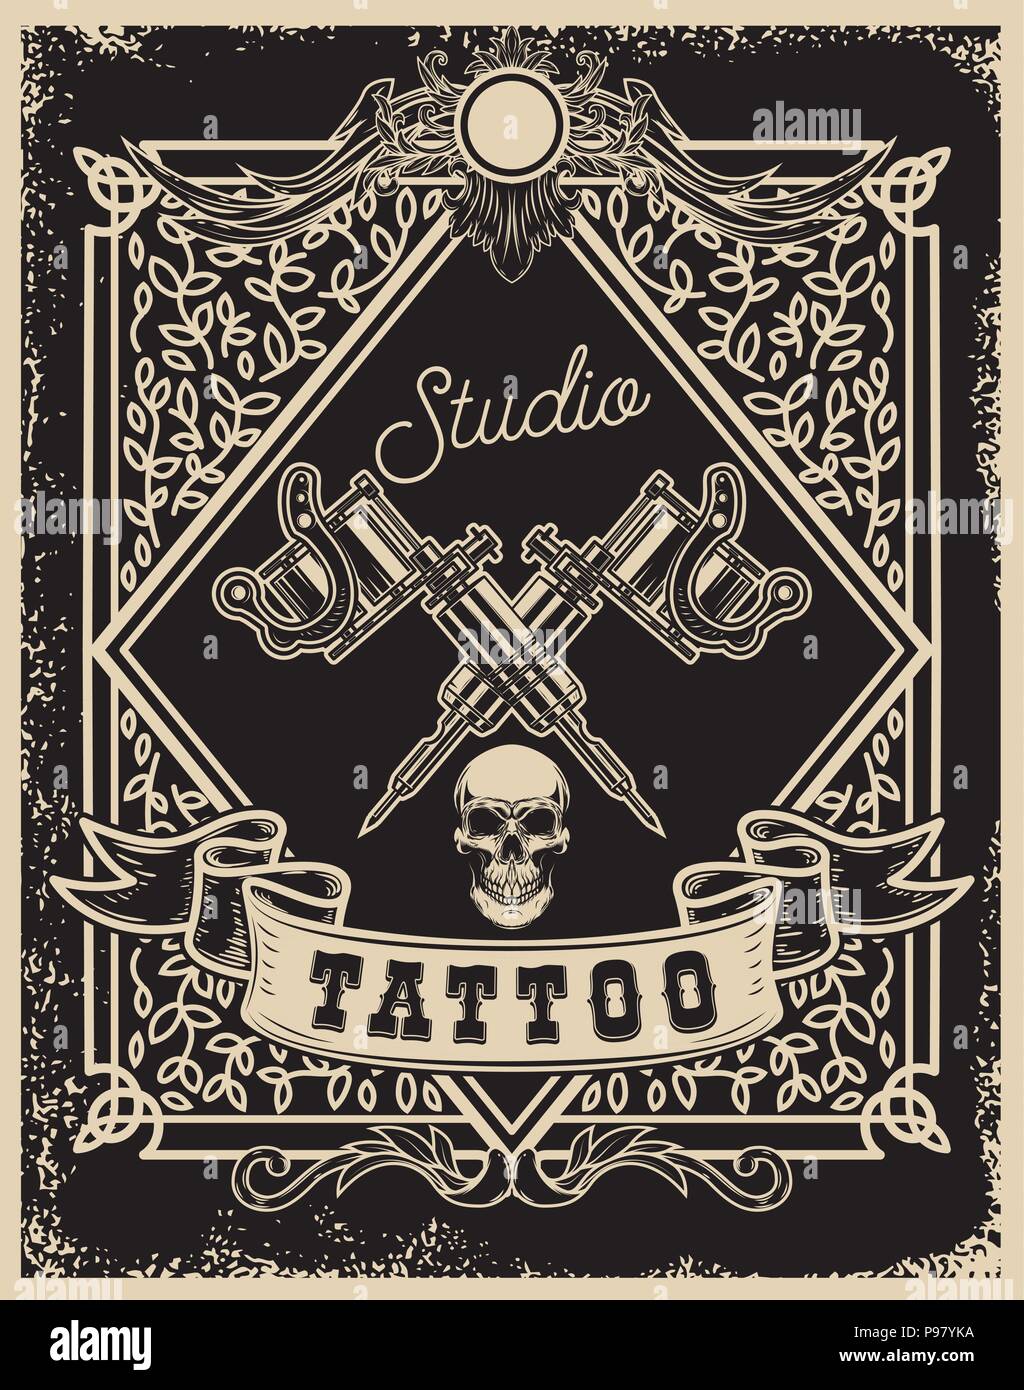 Studio de tatouage modèle d'affiche. Traversée tattoo machines avec tête de  mort. Pour poster, impression, carte de visite, bannière. Image vectorielle  Image Vectorielle Stock - Alamy